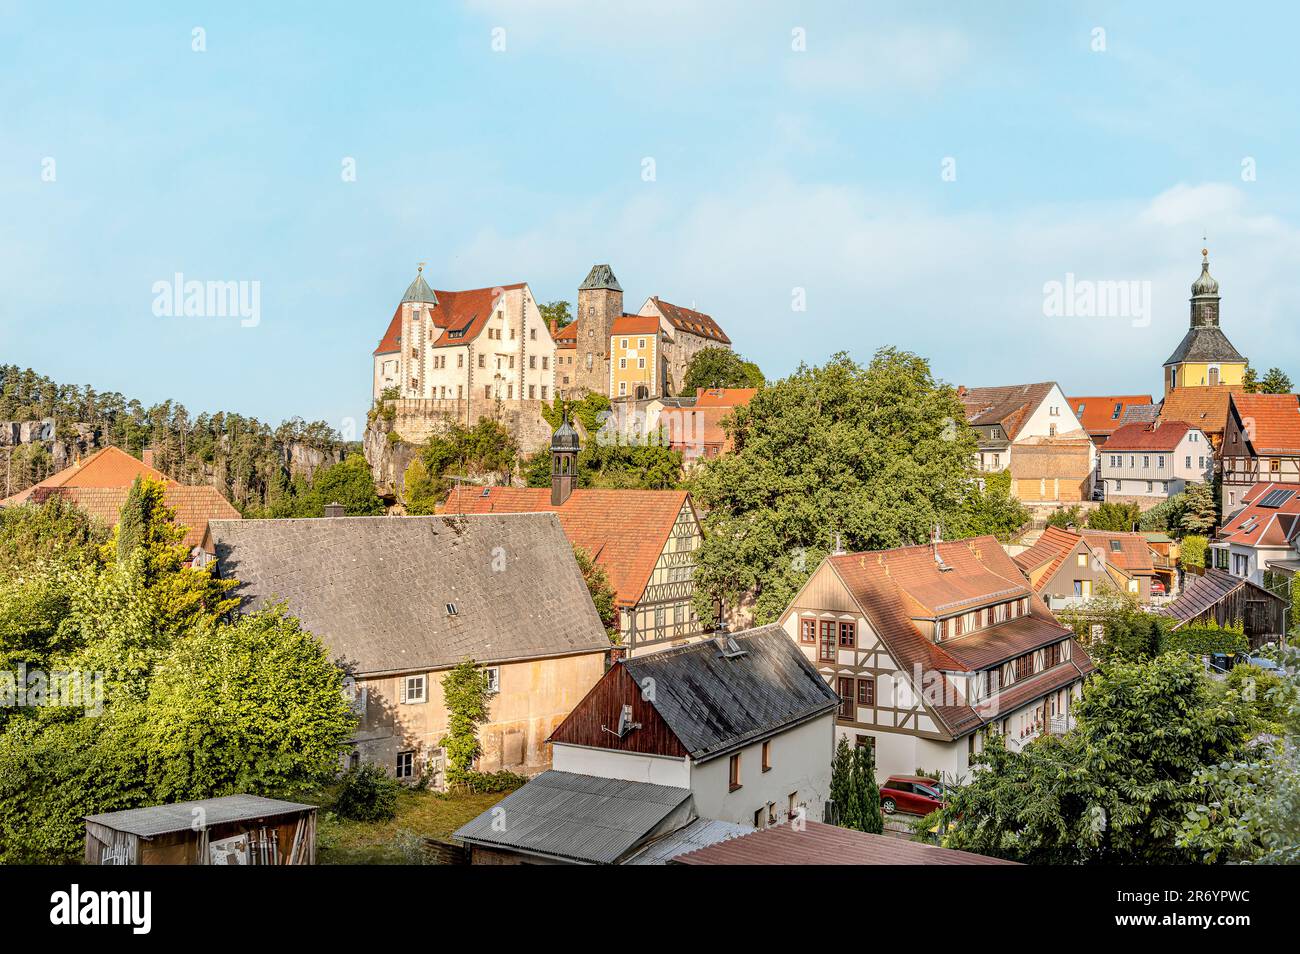 Dorf und Schloss Hohnstein im sächsischen Schweizer Raum, Sachsen, Deutschland Stockfoto